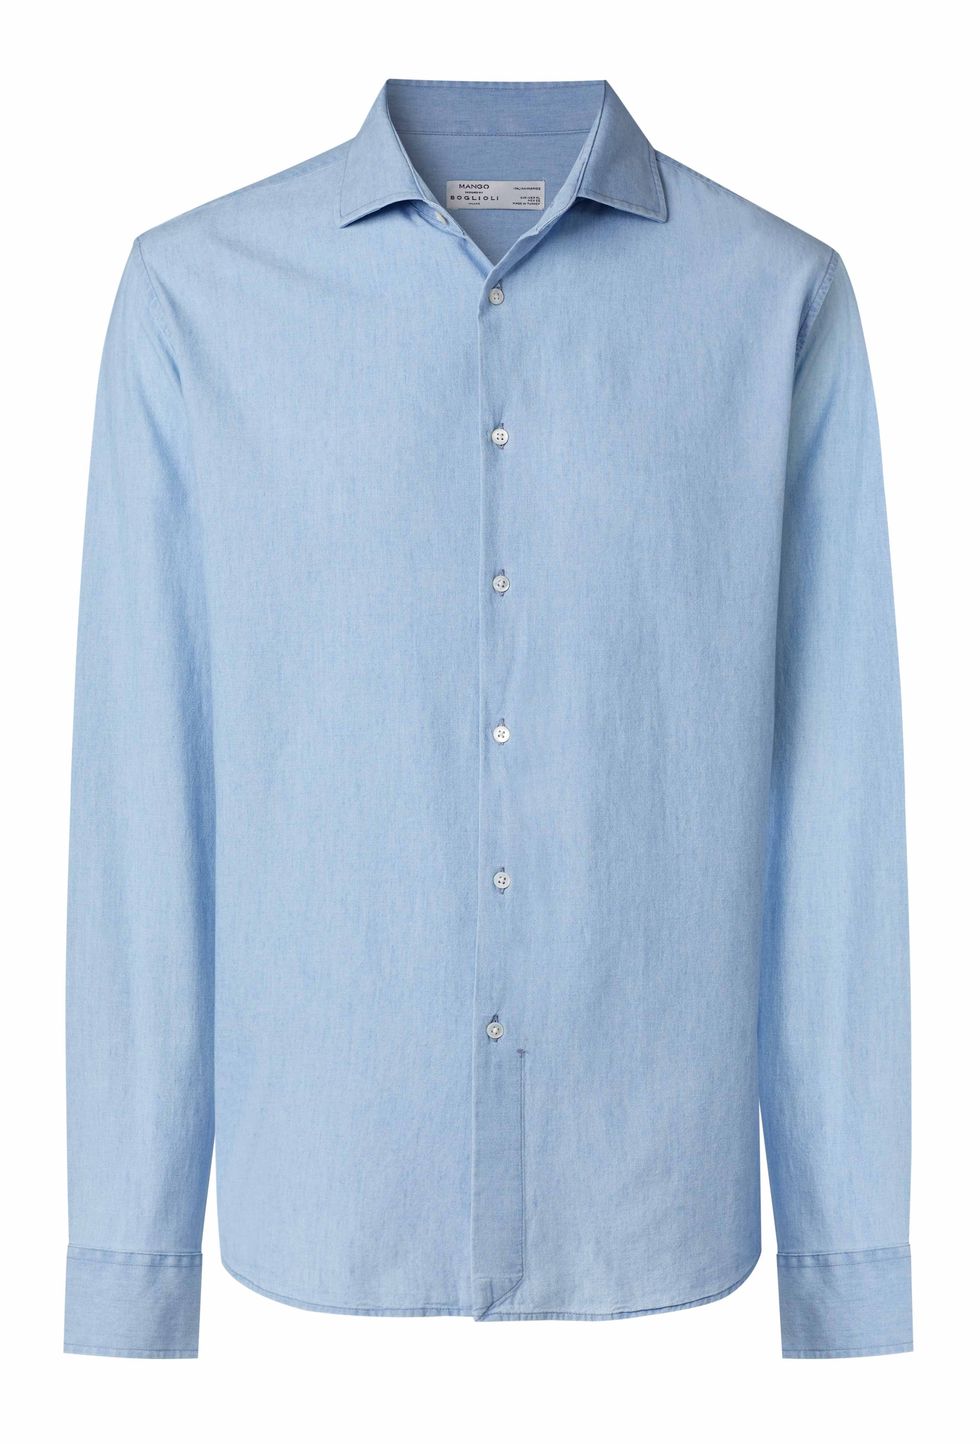 Camisa azul slim fit de algodón